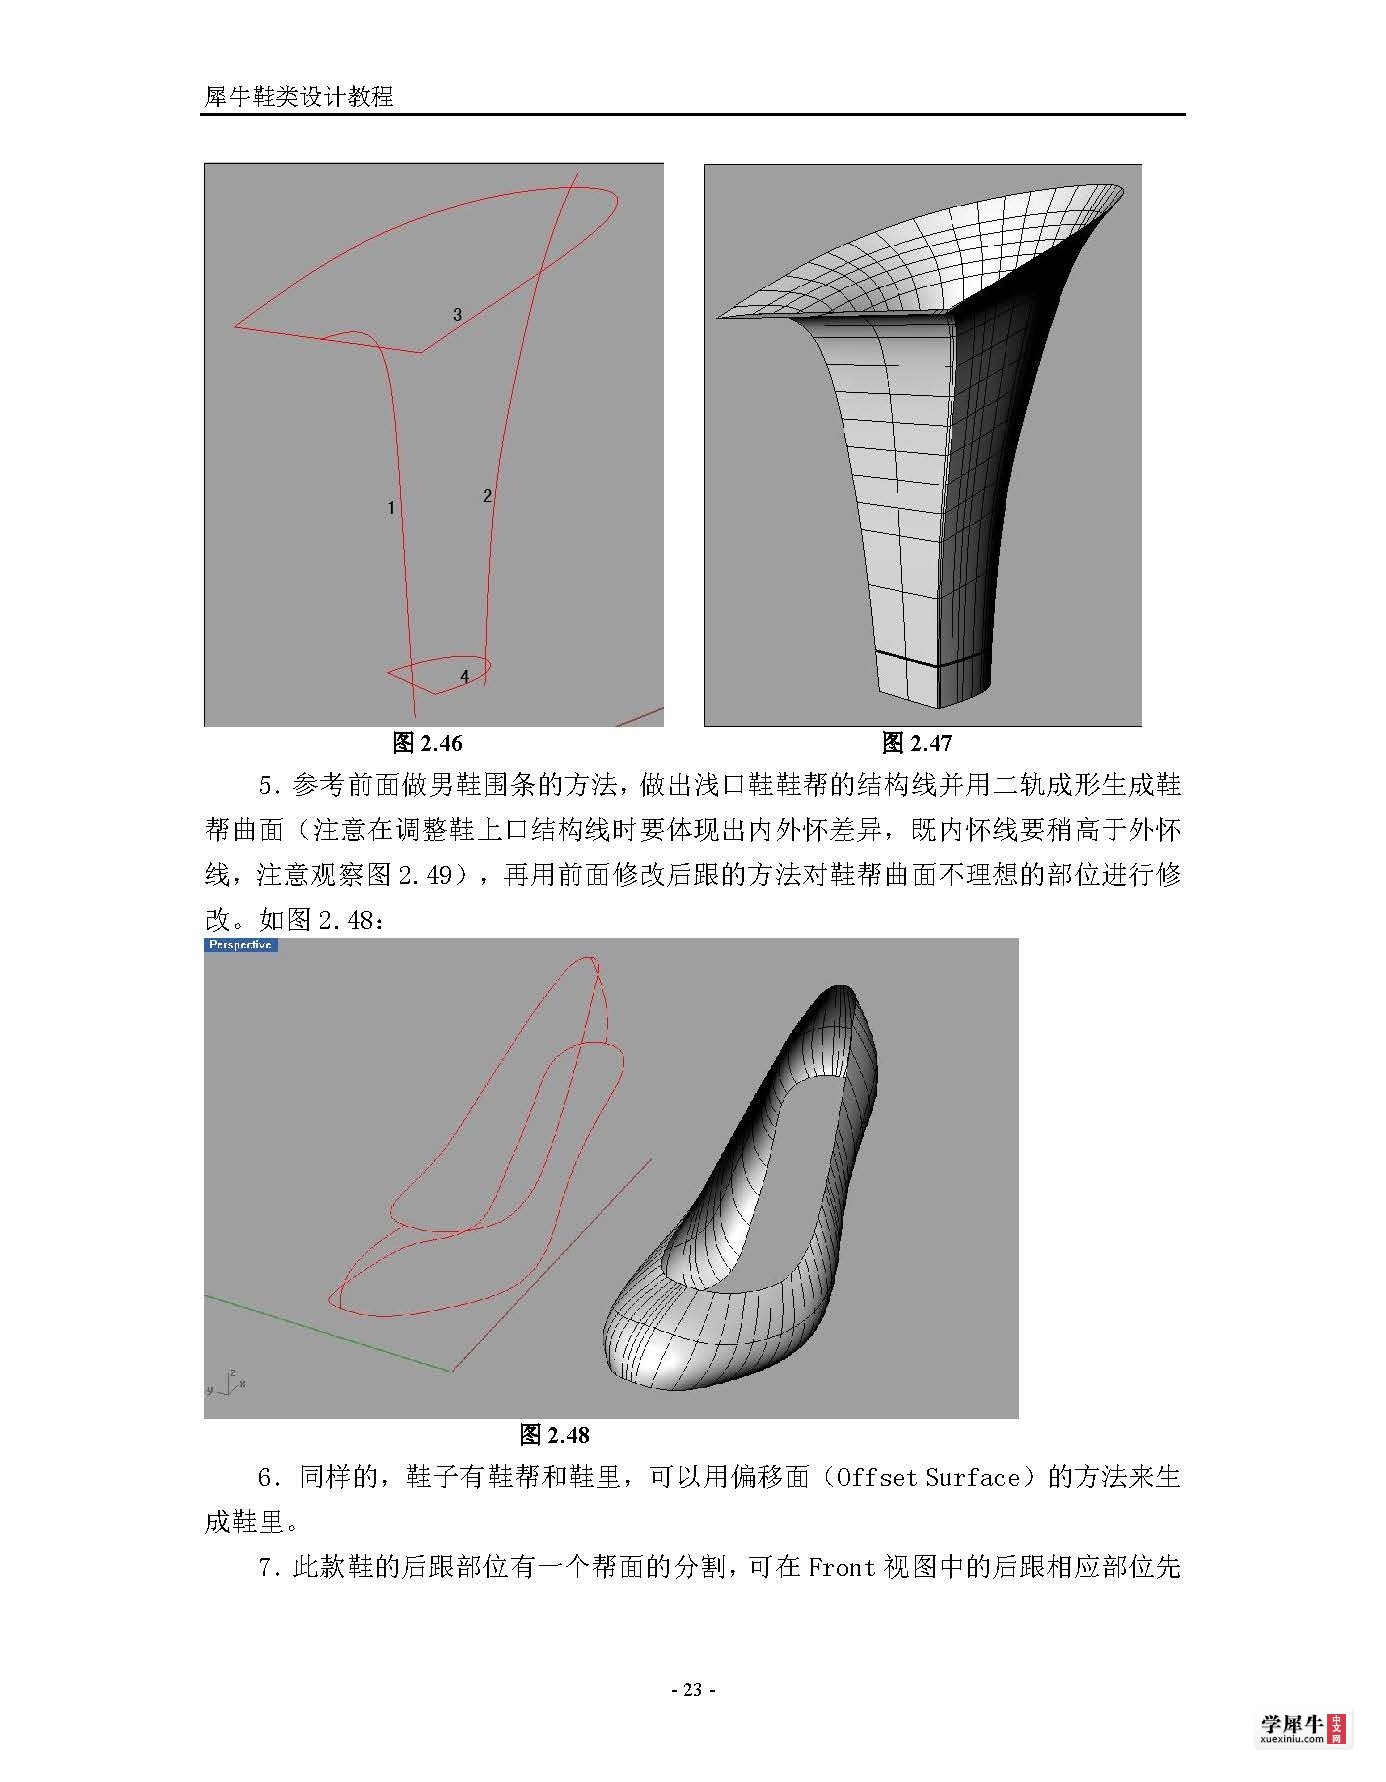 犀牛鞋类建模终极教程(转)_页面_23.jpg